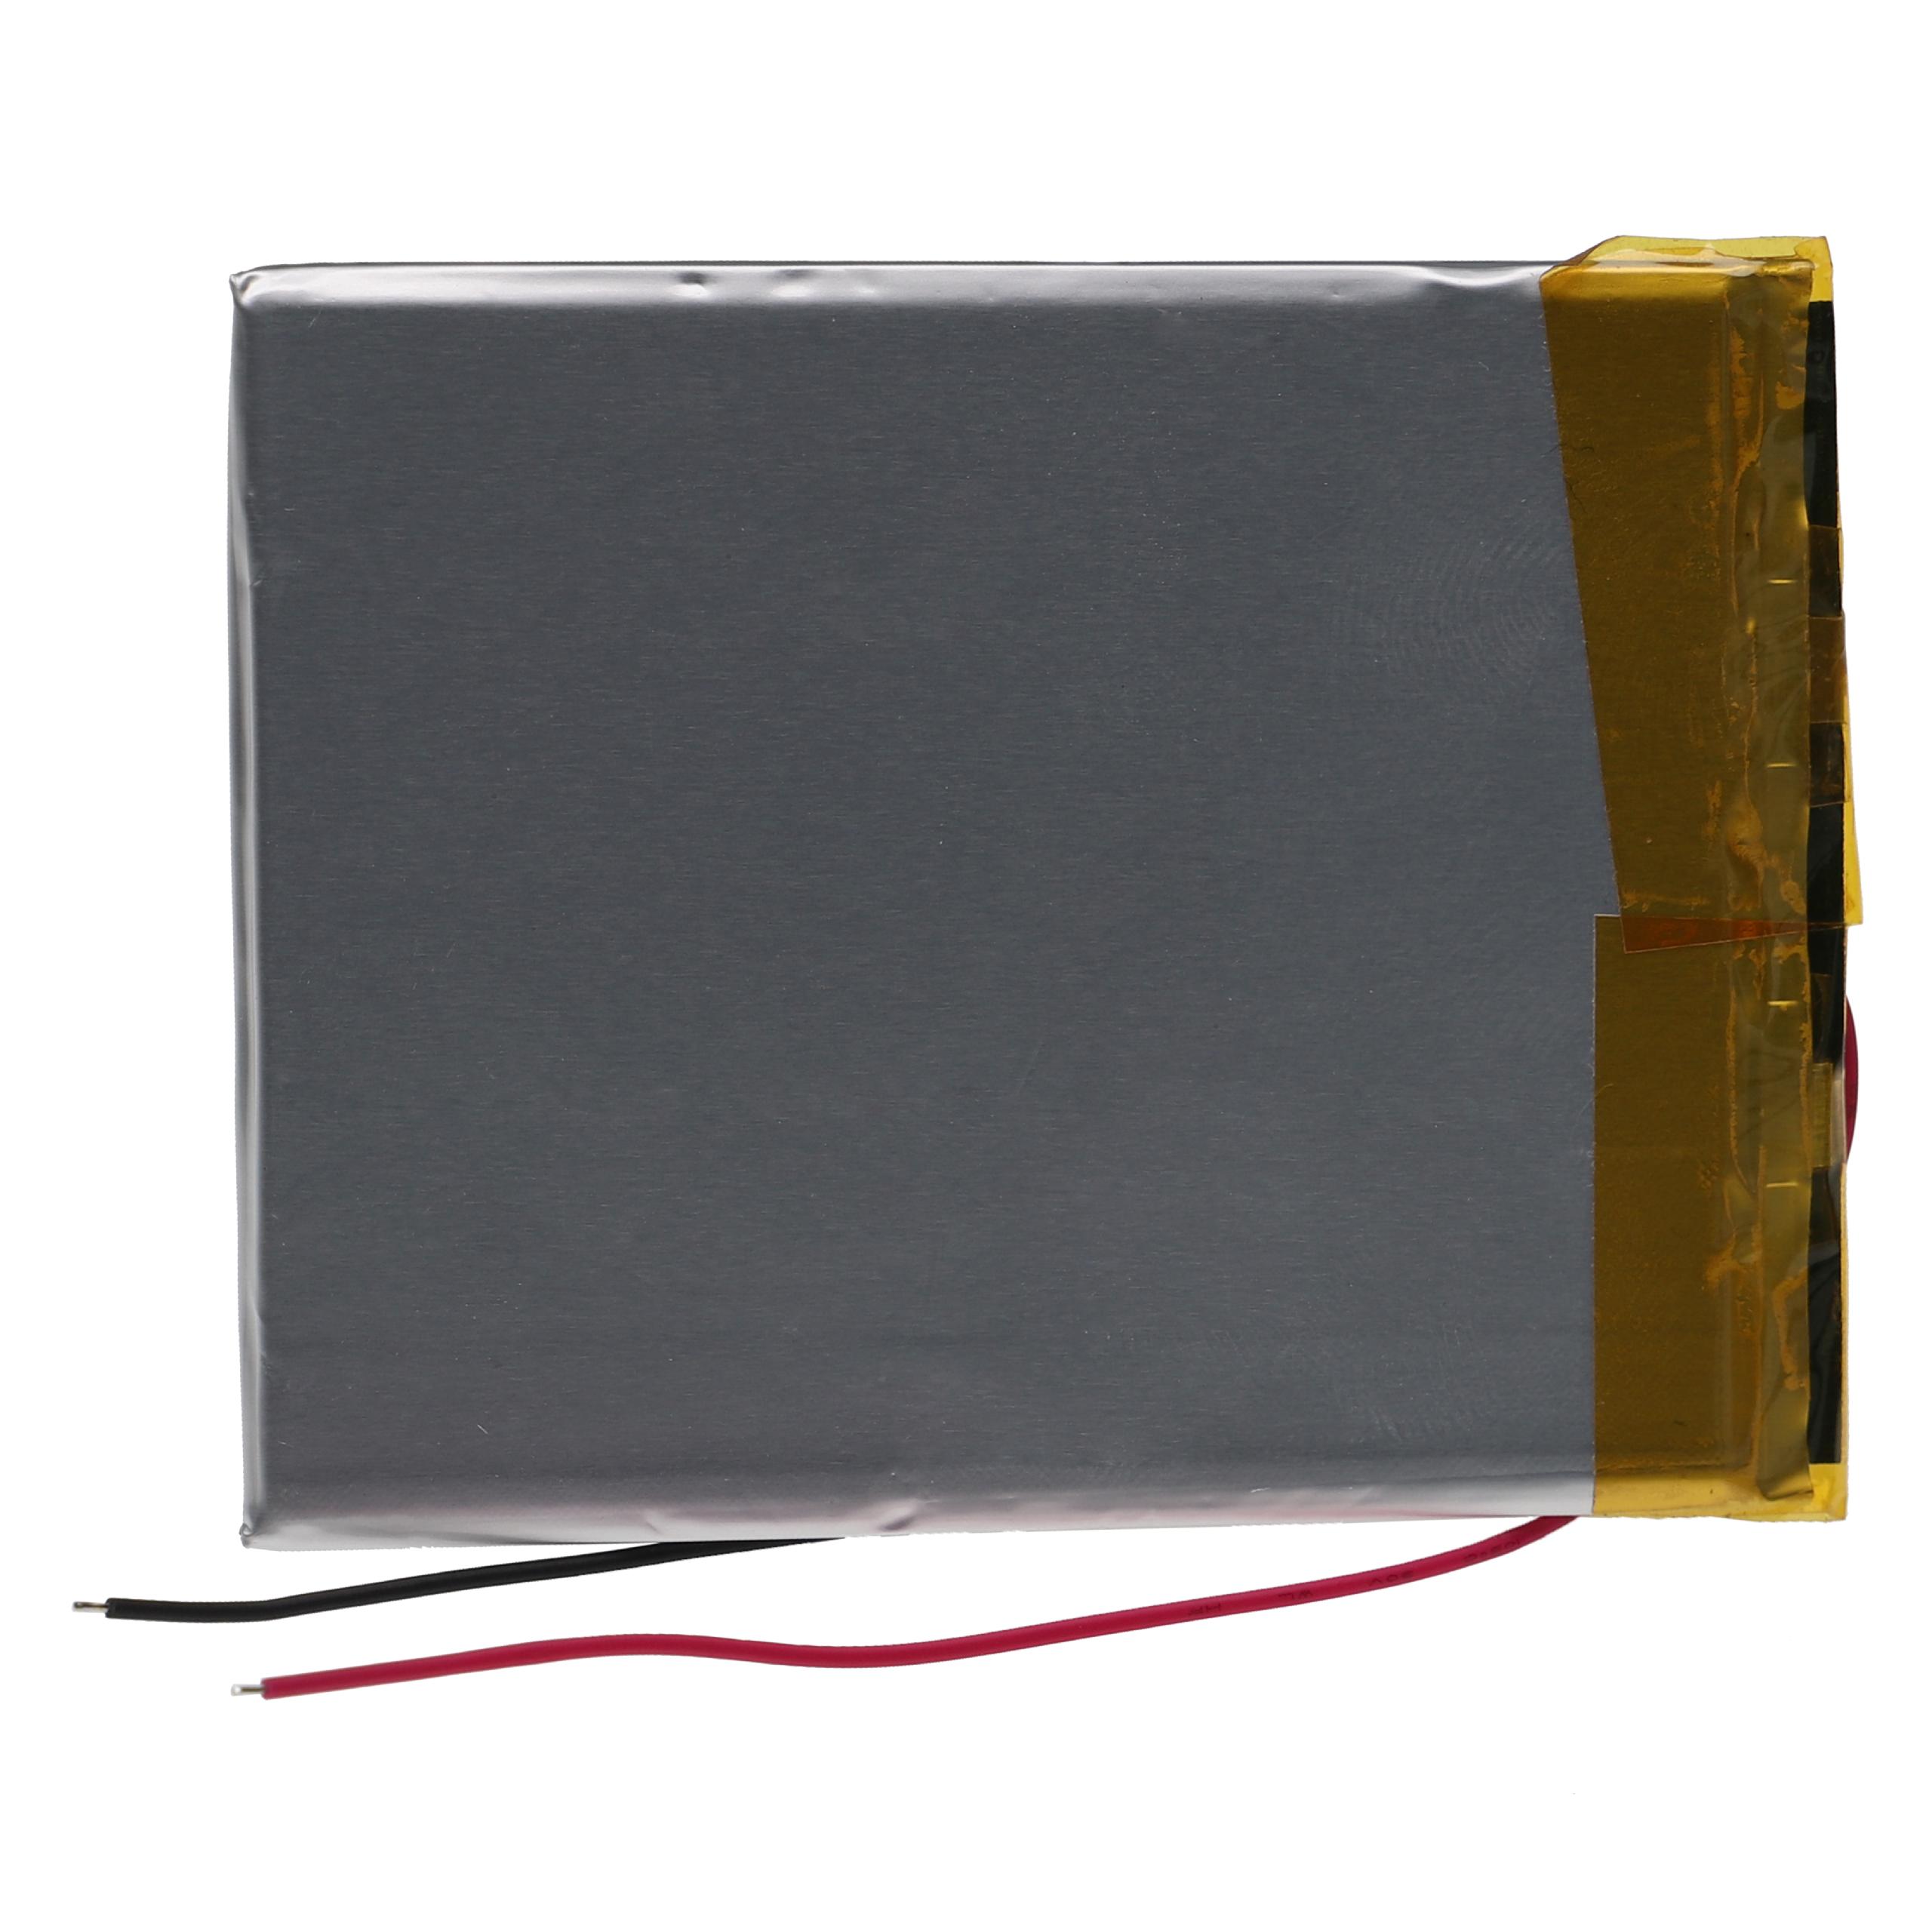 Batterie remplace Boyue T-356575 pour liseuse ebook - 2100mAh 3,7V Li-polymère